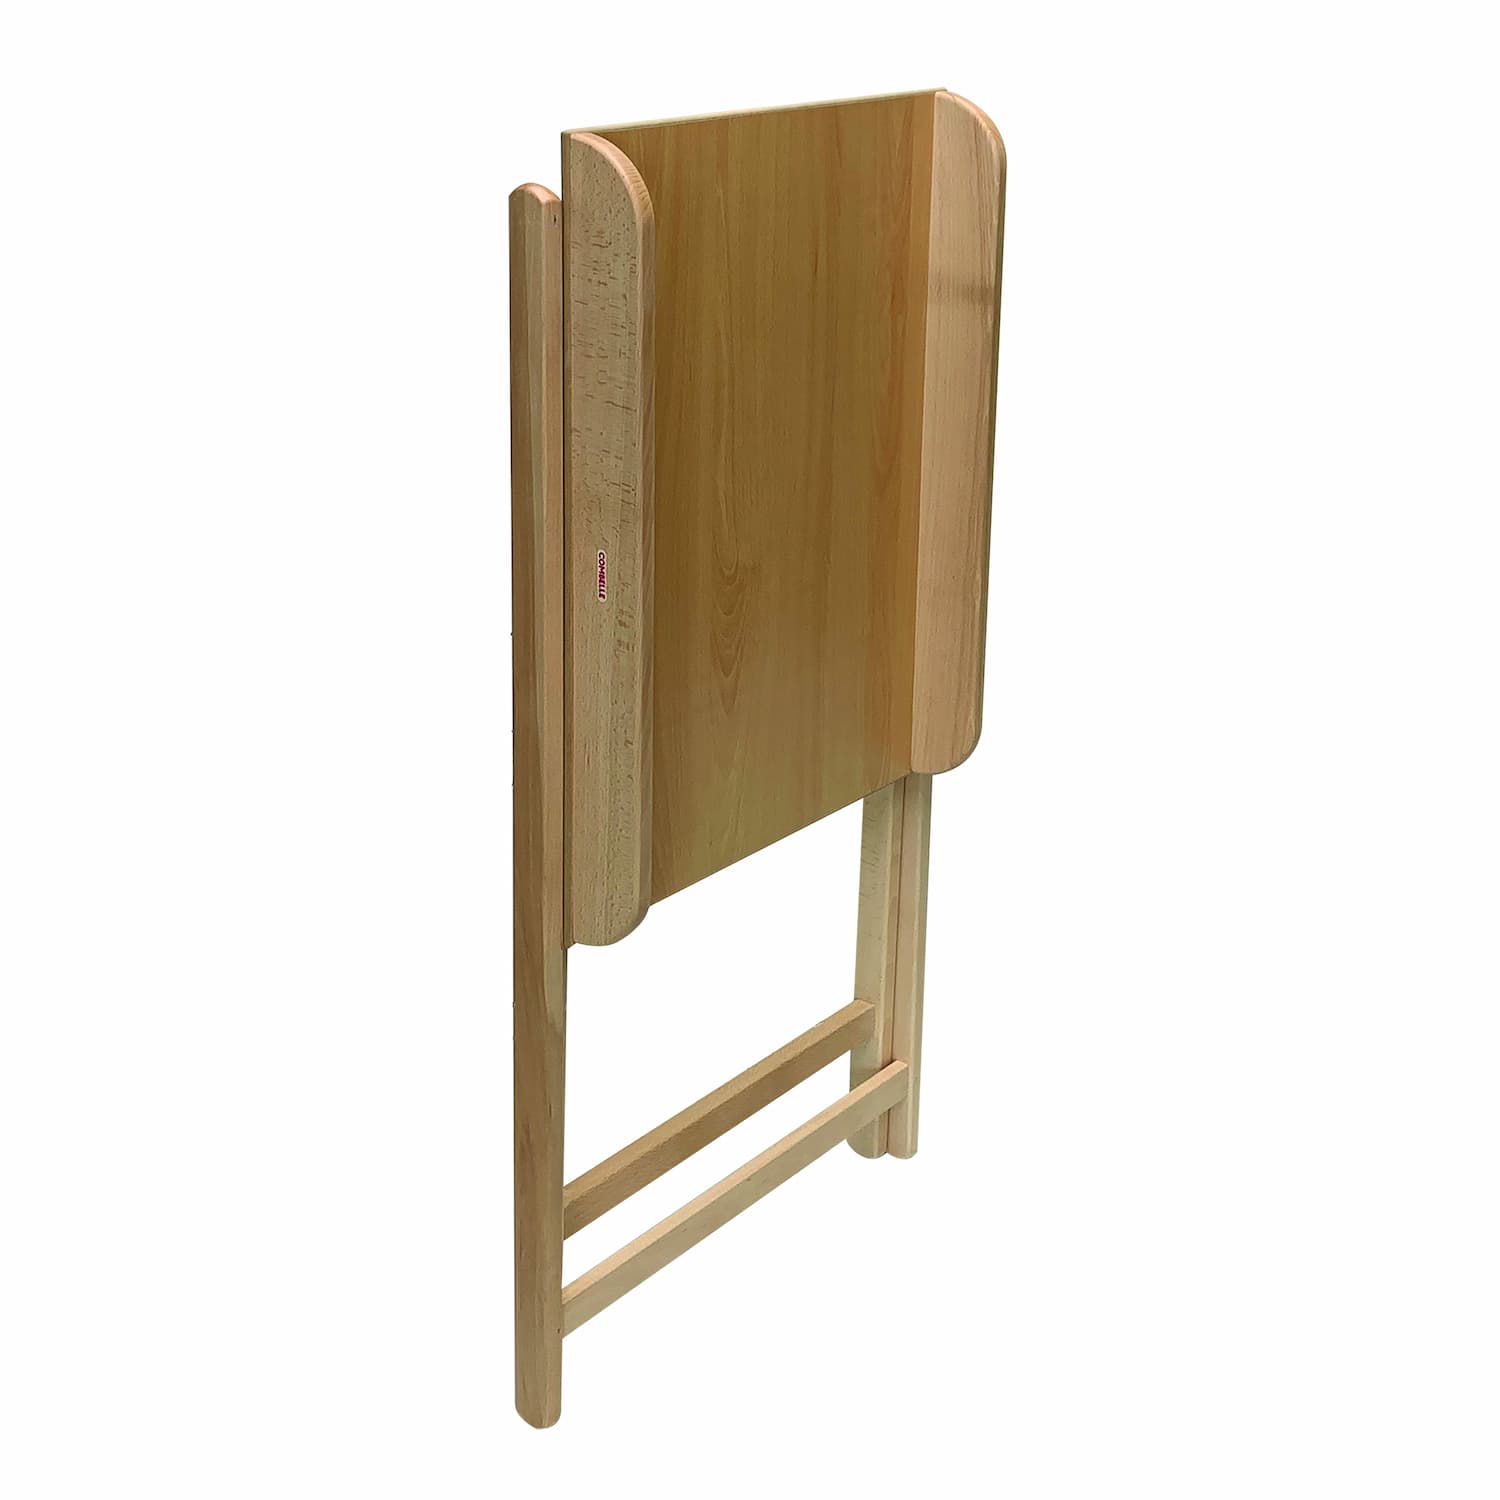 Tables à langer en bois - Petits espaces - Livraison rapide – Lulu au lit